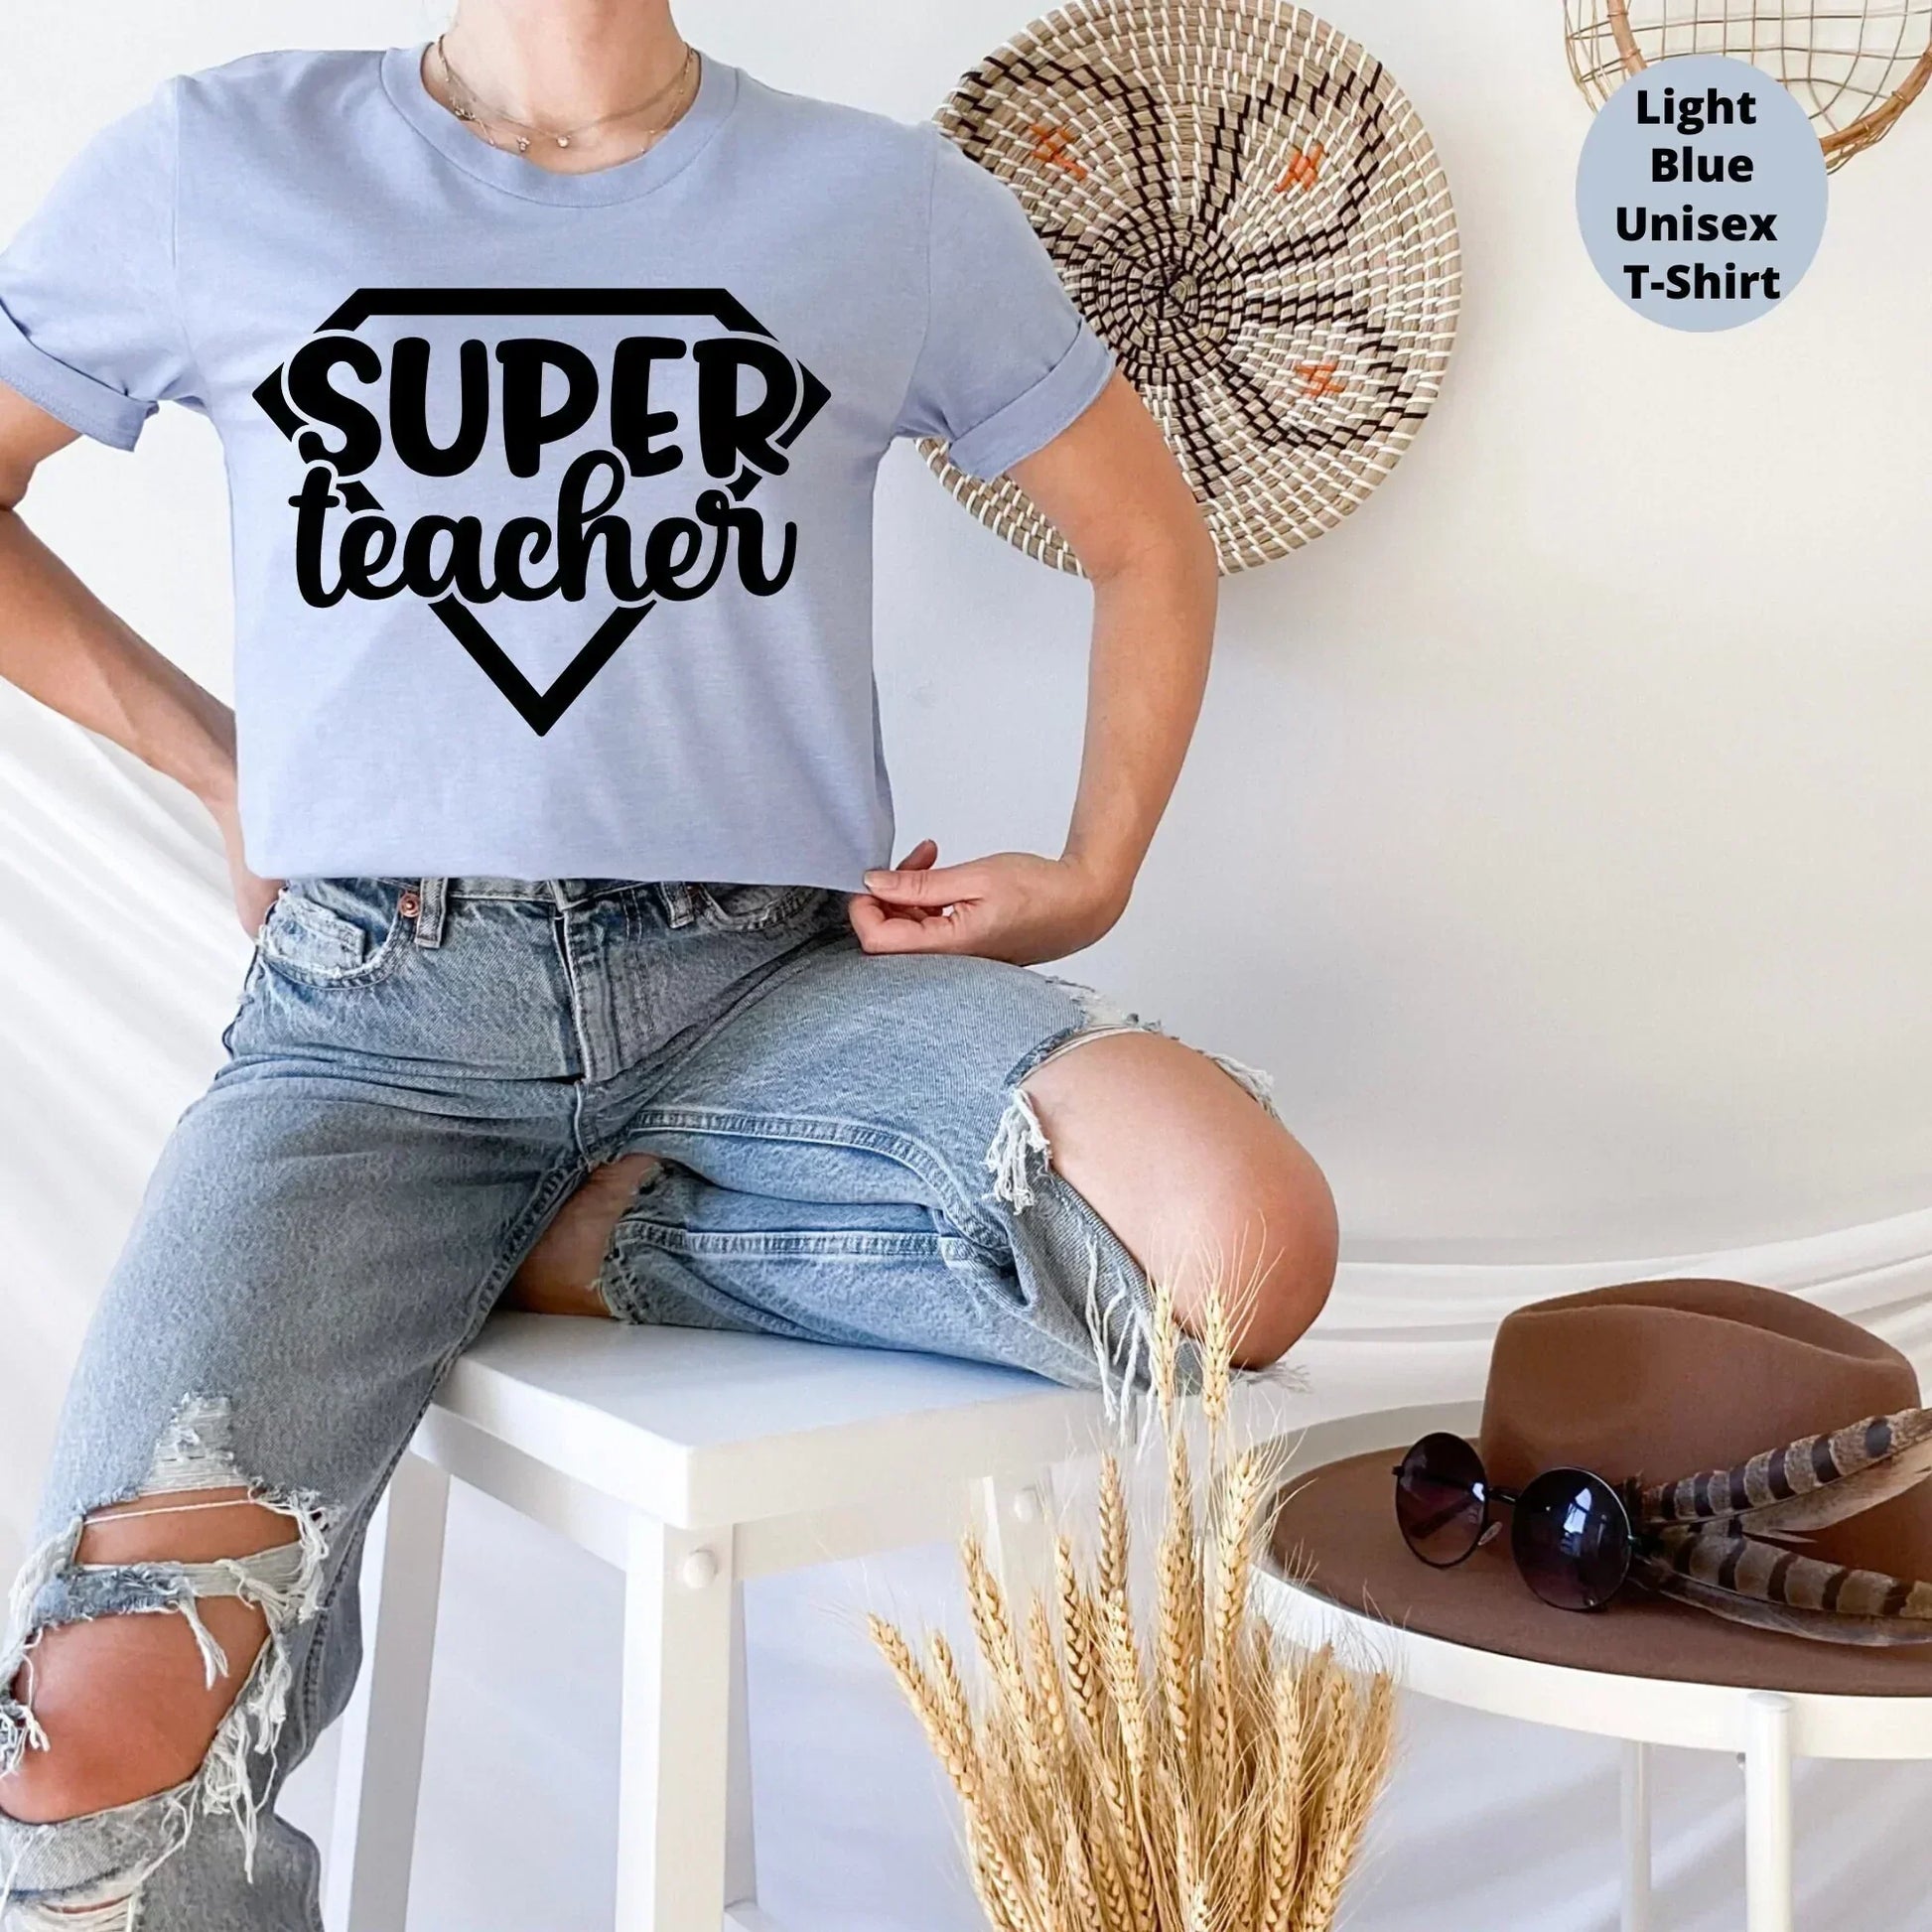 Super Teacher Shirt, Teacher Appreciation Gift, Elementary School Teacher Shirt, Special Education Shirt, High School Teacher Back to School HMDesignStudioUS